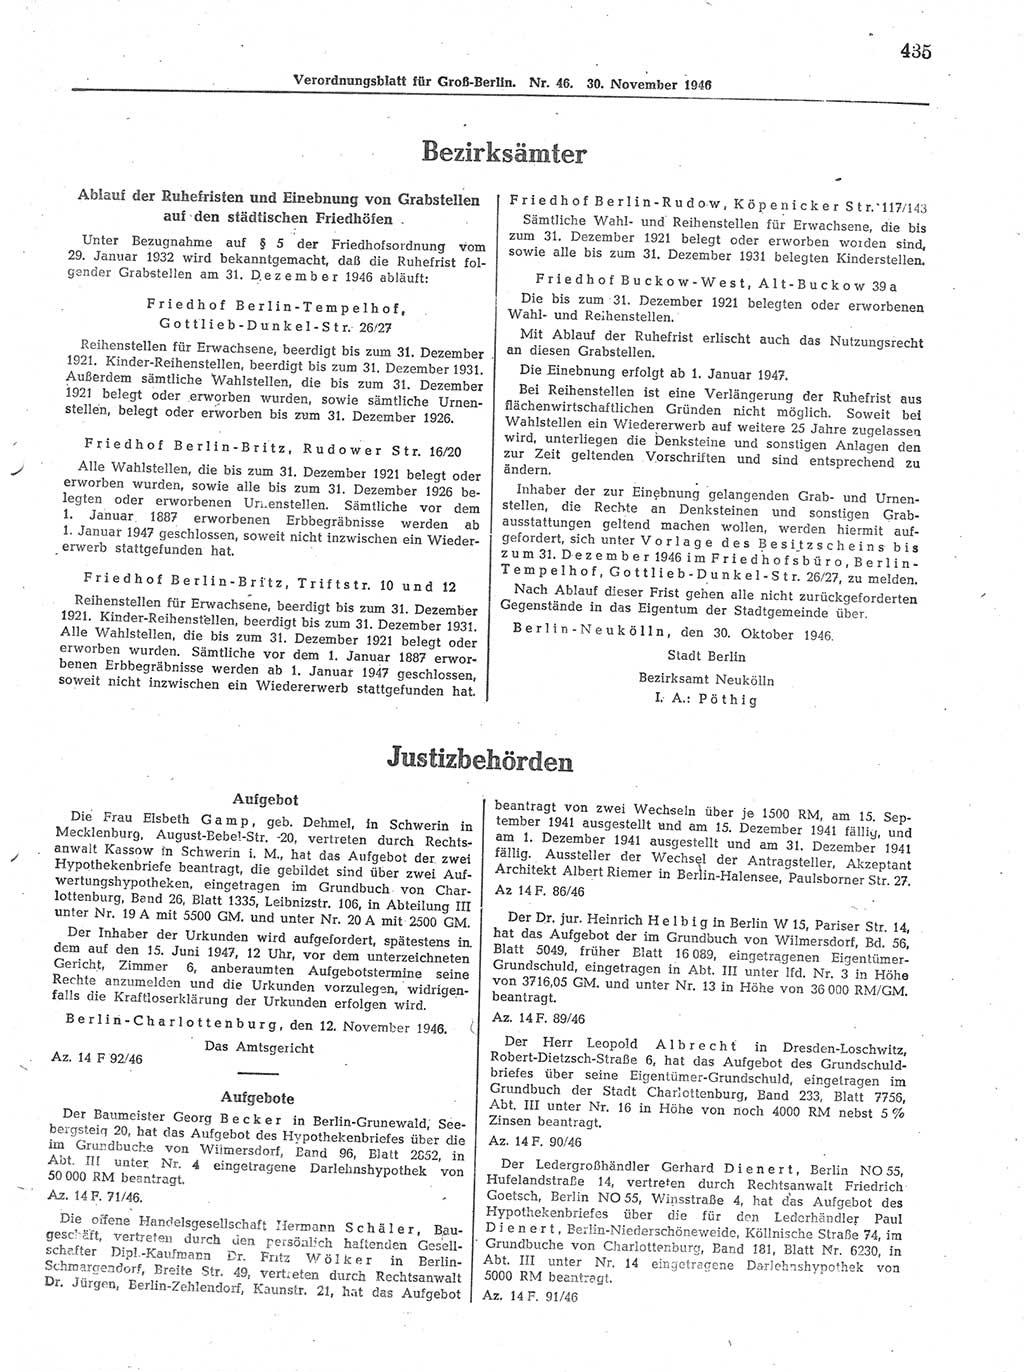 Verordnungsblatt (VOBl.) der Stadt Berlin, für Groß-Berlin 1946, Seite 435 (VOBl. Bln. 1946, S. 435)